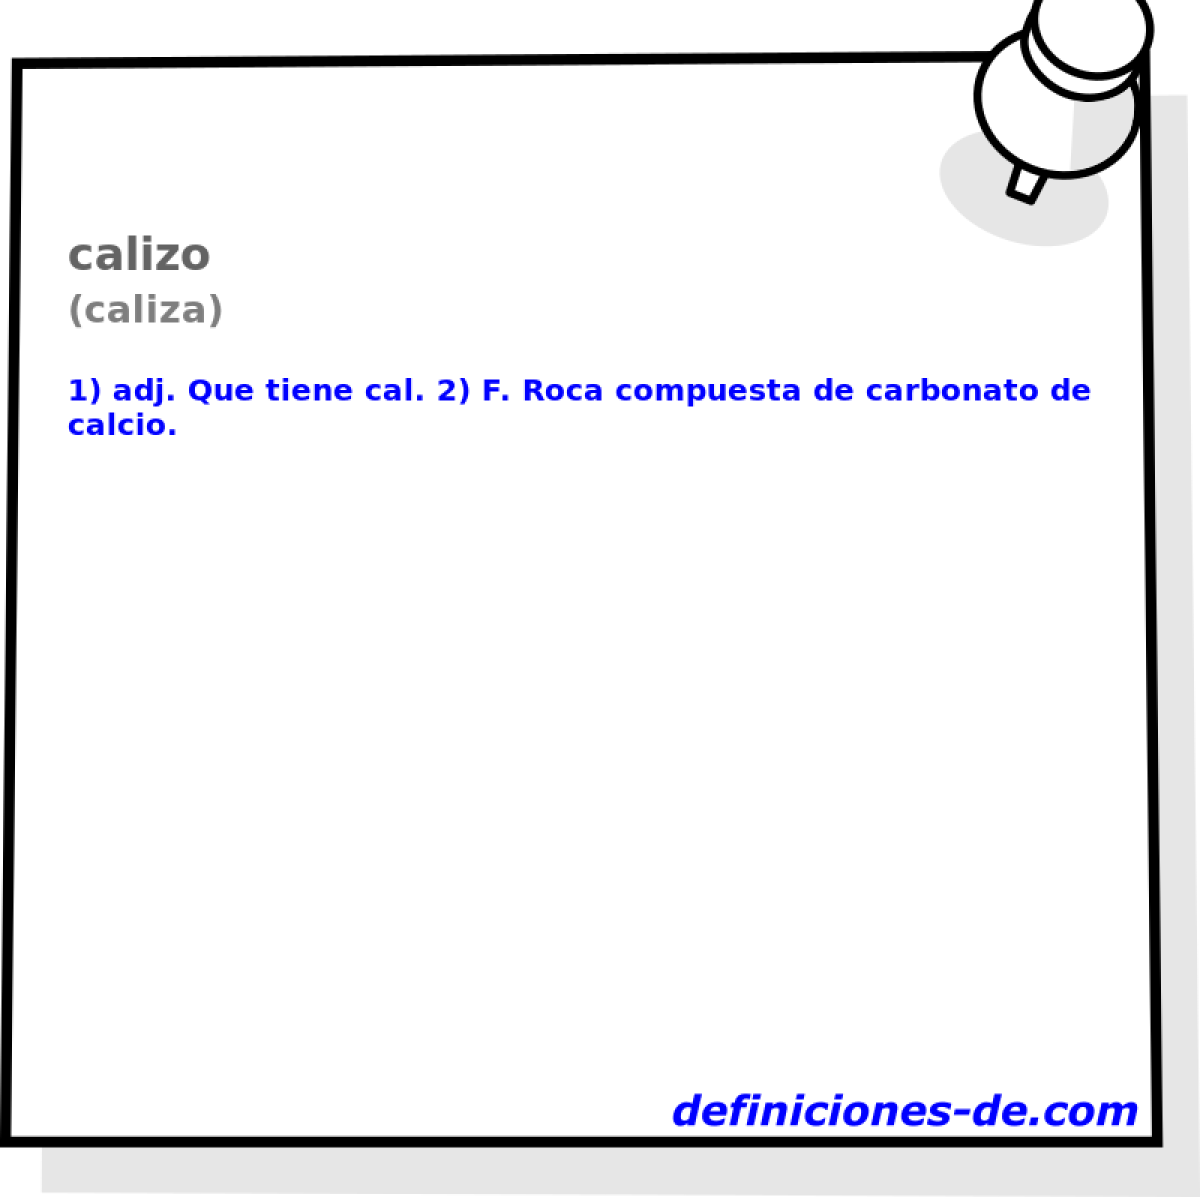 calizo (caliza)